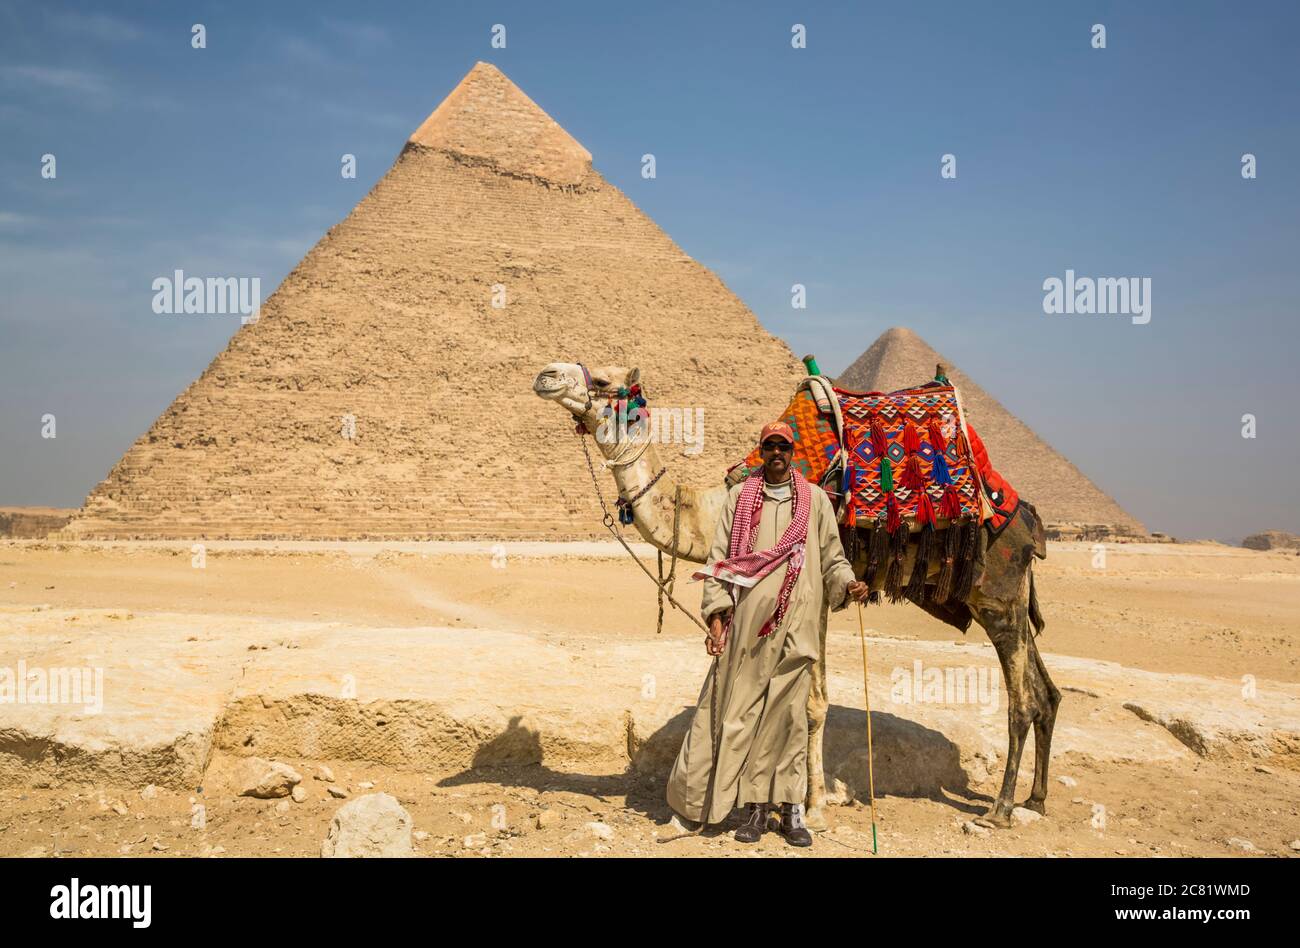 Homme local avec chameau, Pyramide de Khafre, complexe de la pyramide de Giza, site du patrimoine mondial de l'UNESCO ; Giza, Égypte Banque D'Images